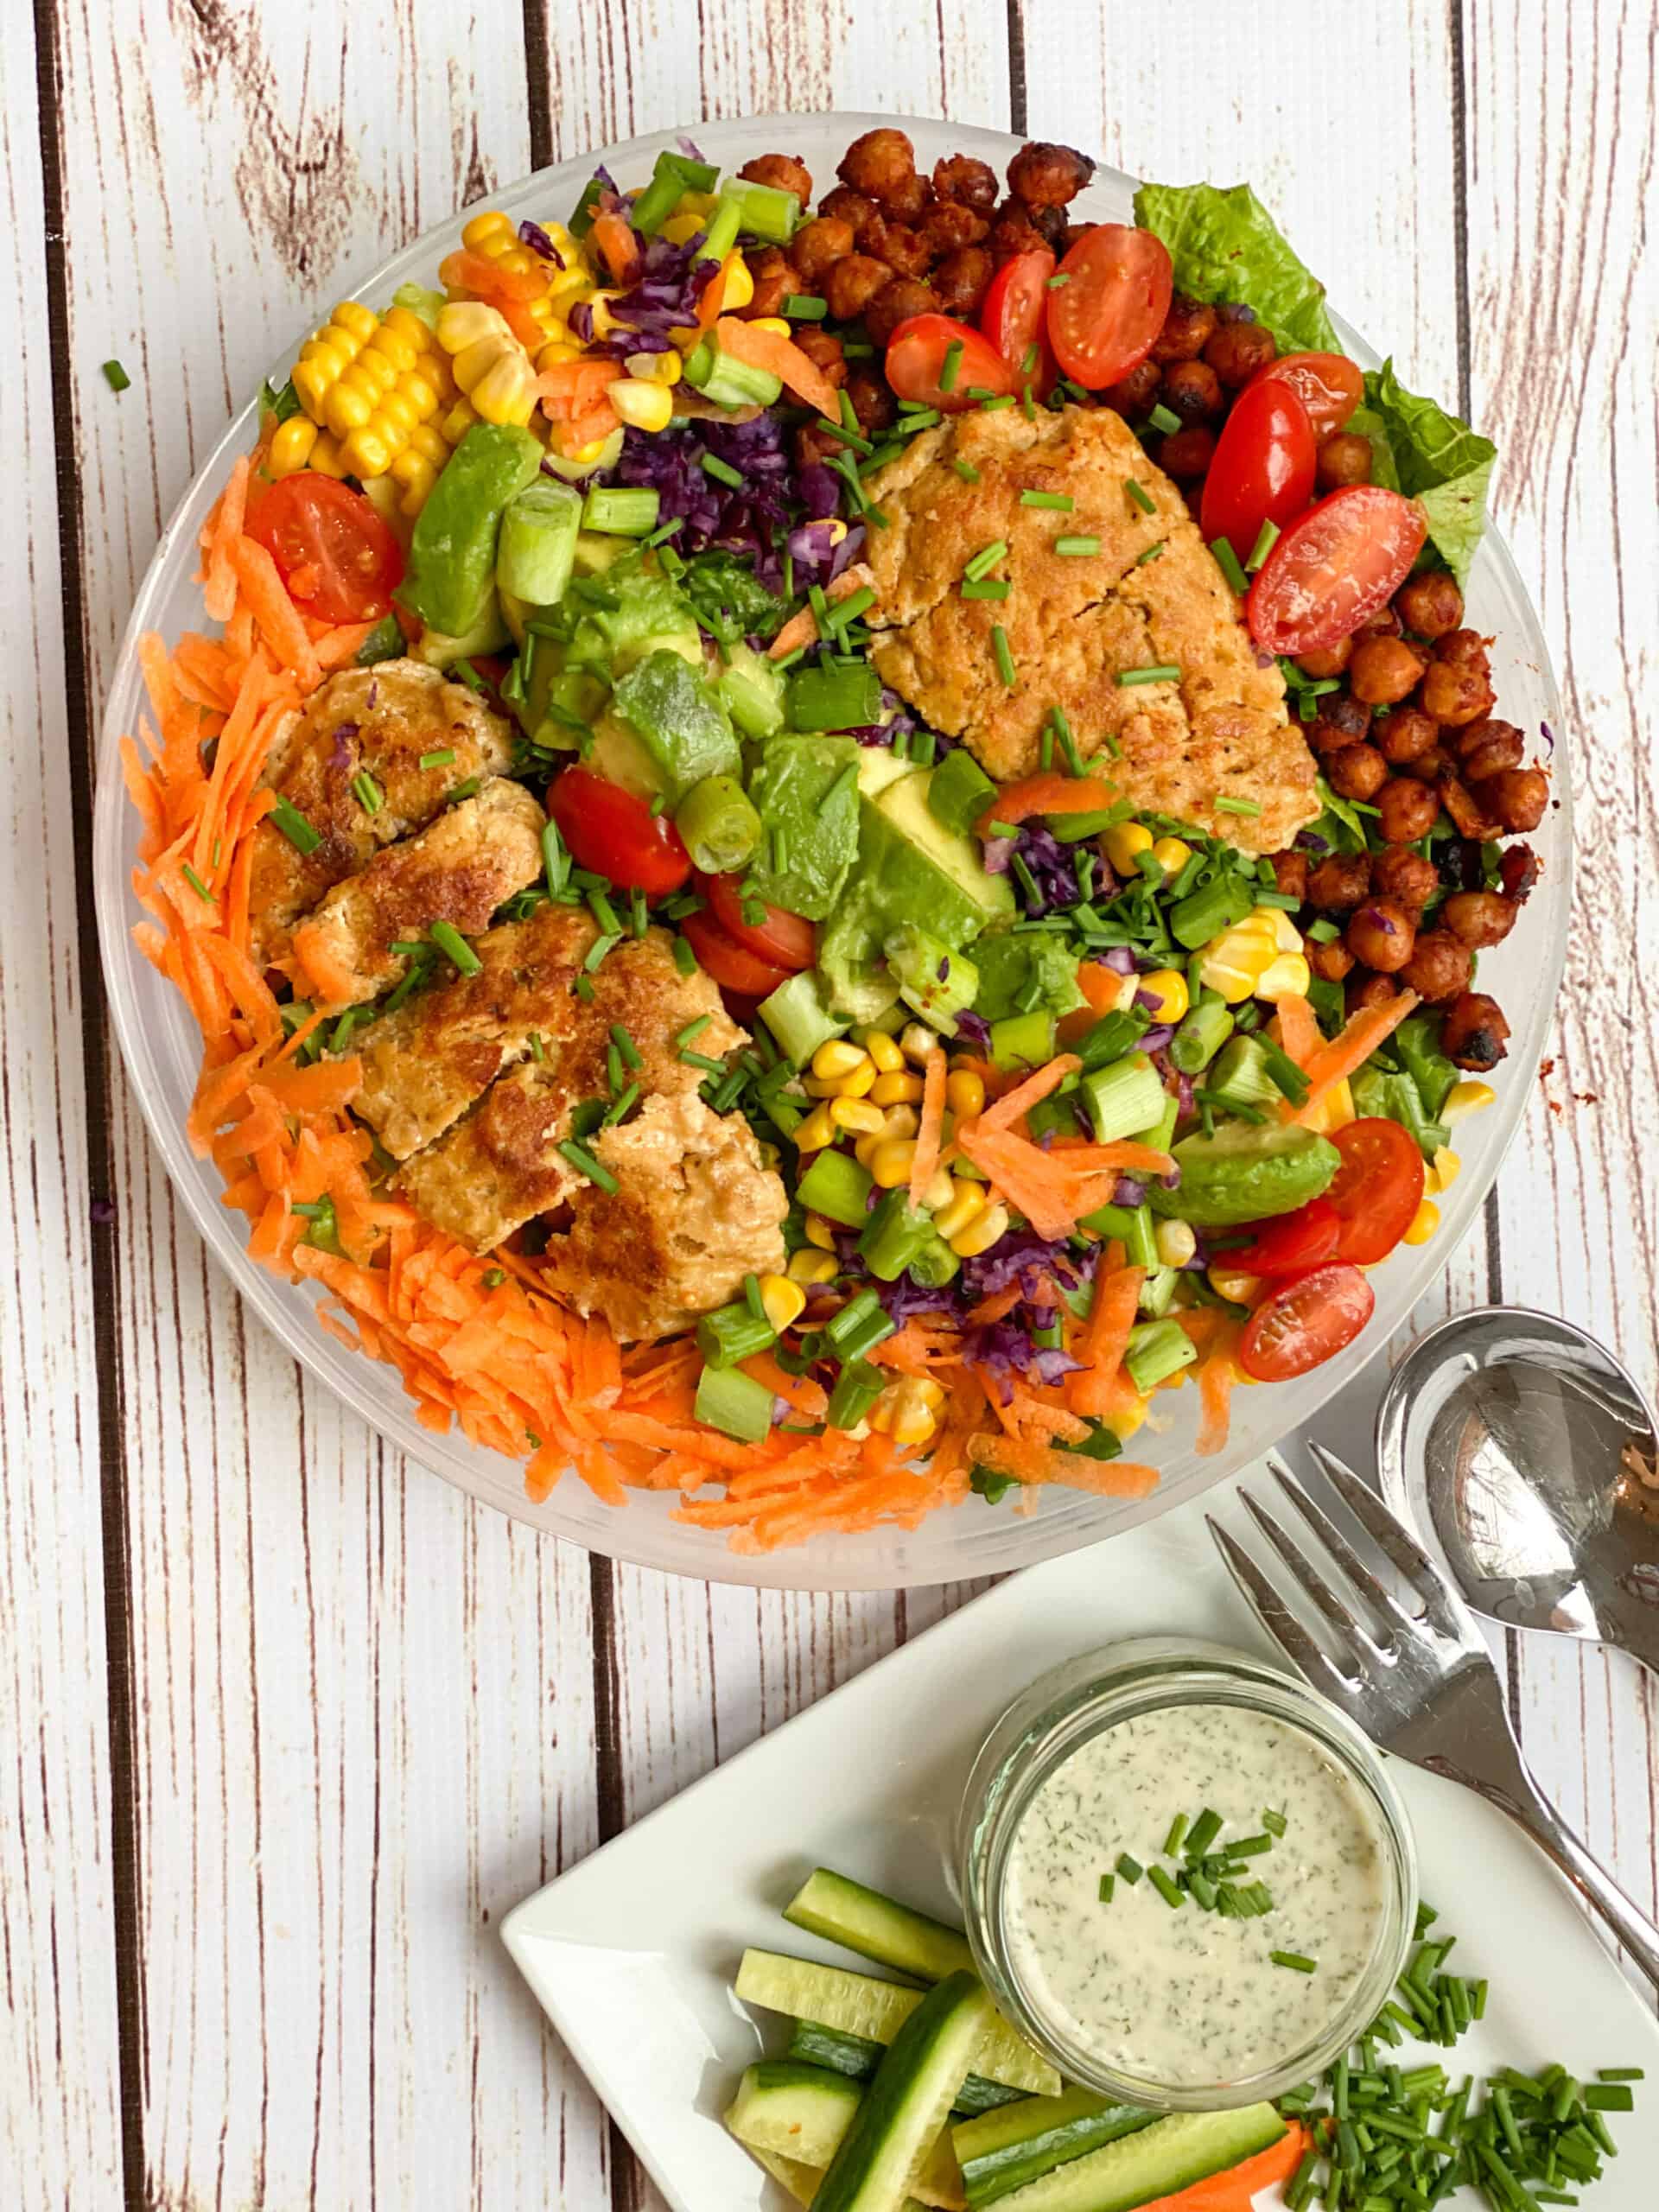 Best Vegan Cobb Salad Recipe With Roasted Chickpeas & Seitan Chicken